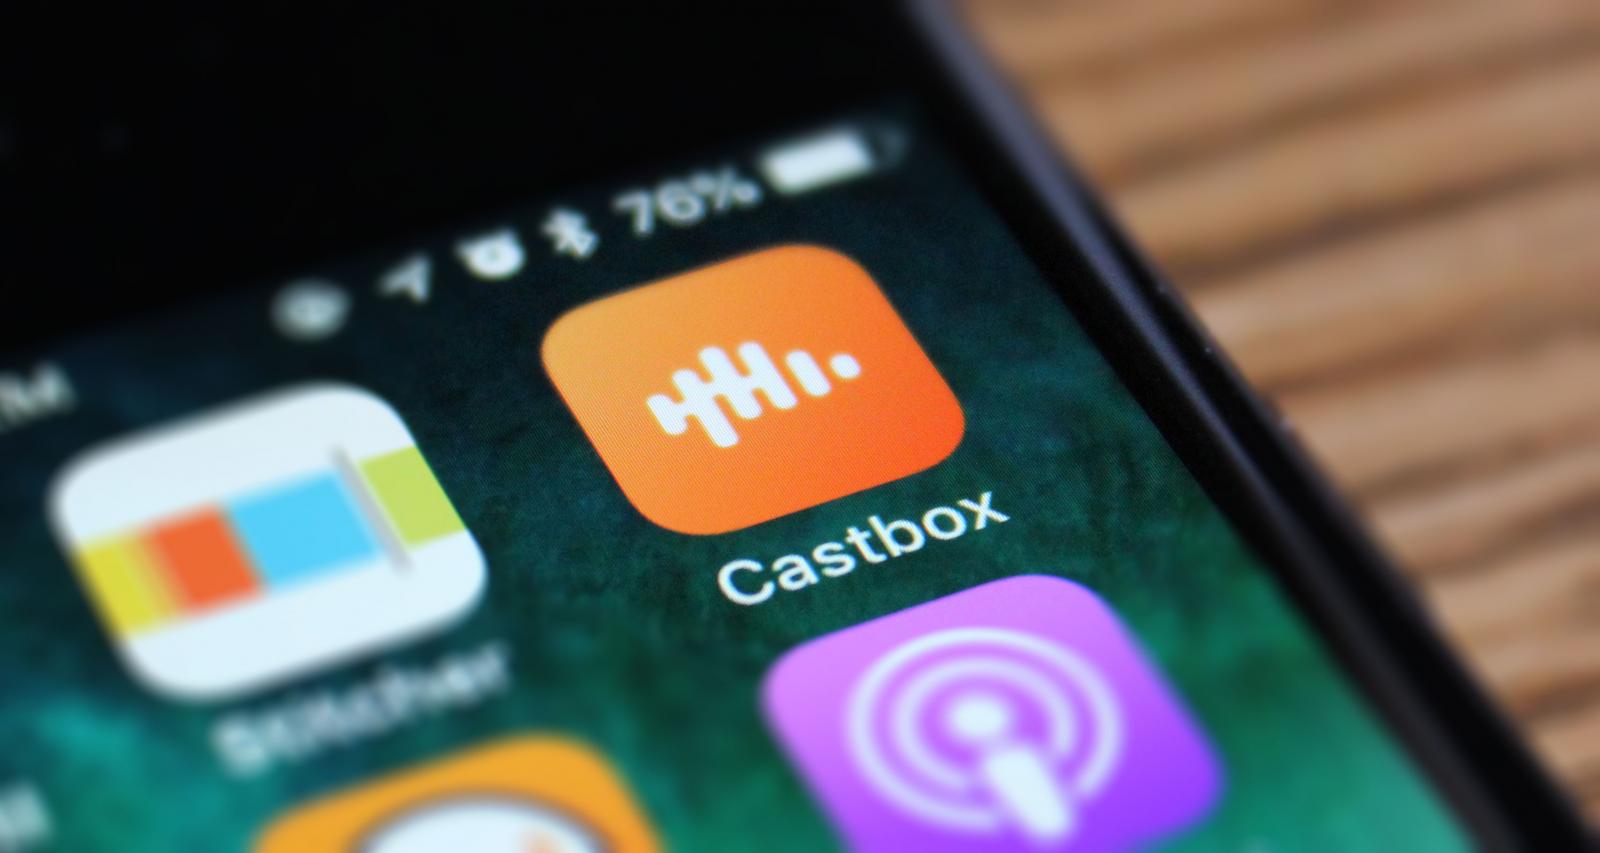 Castbox app